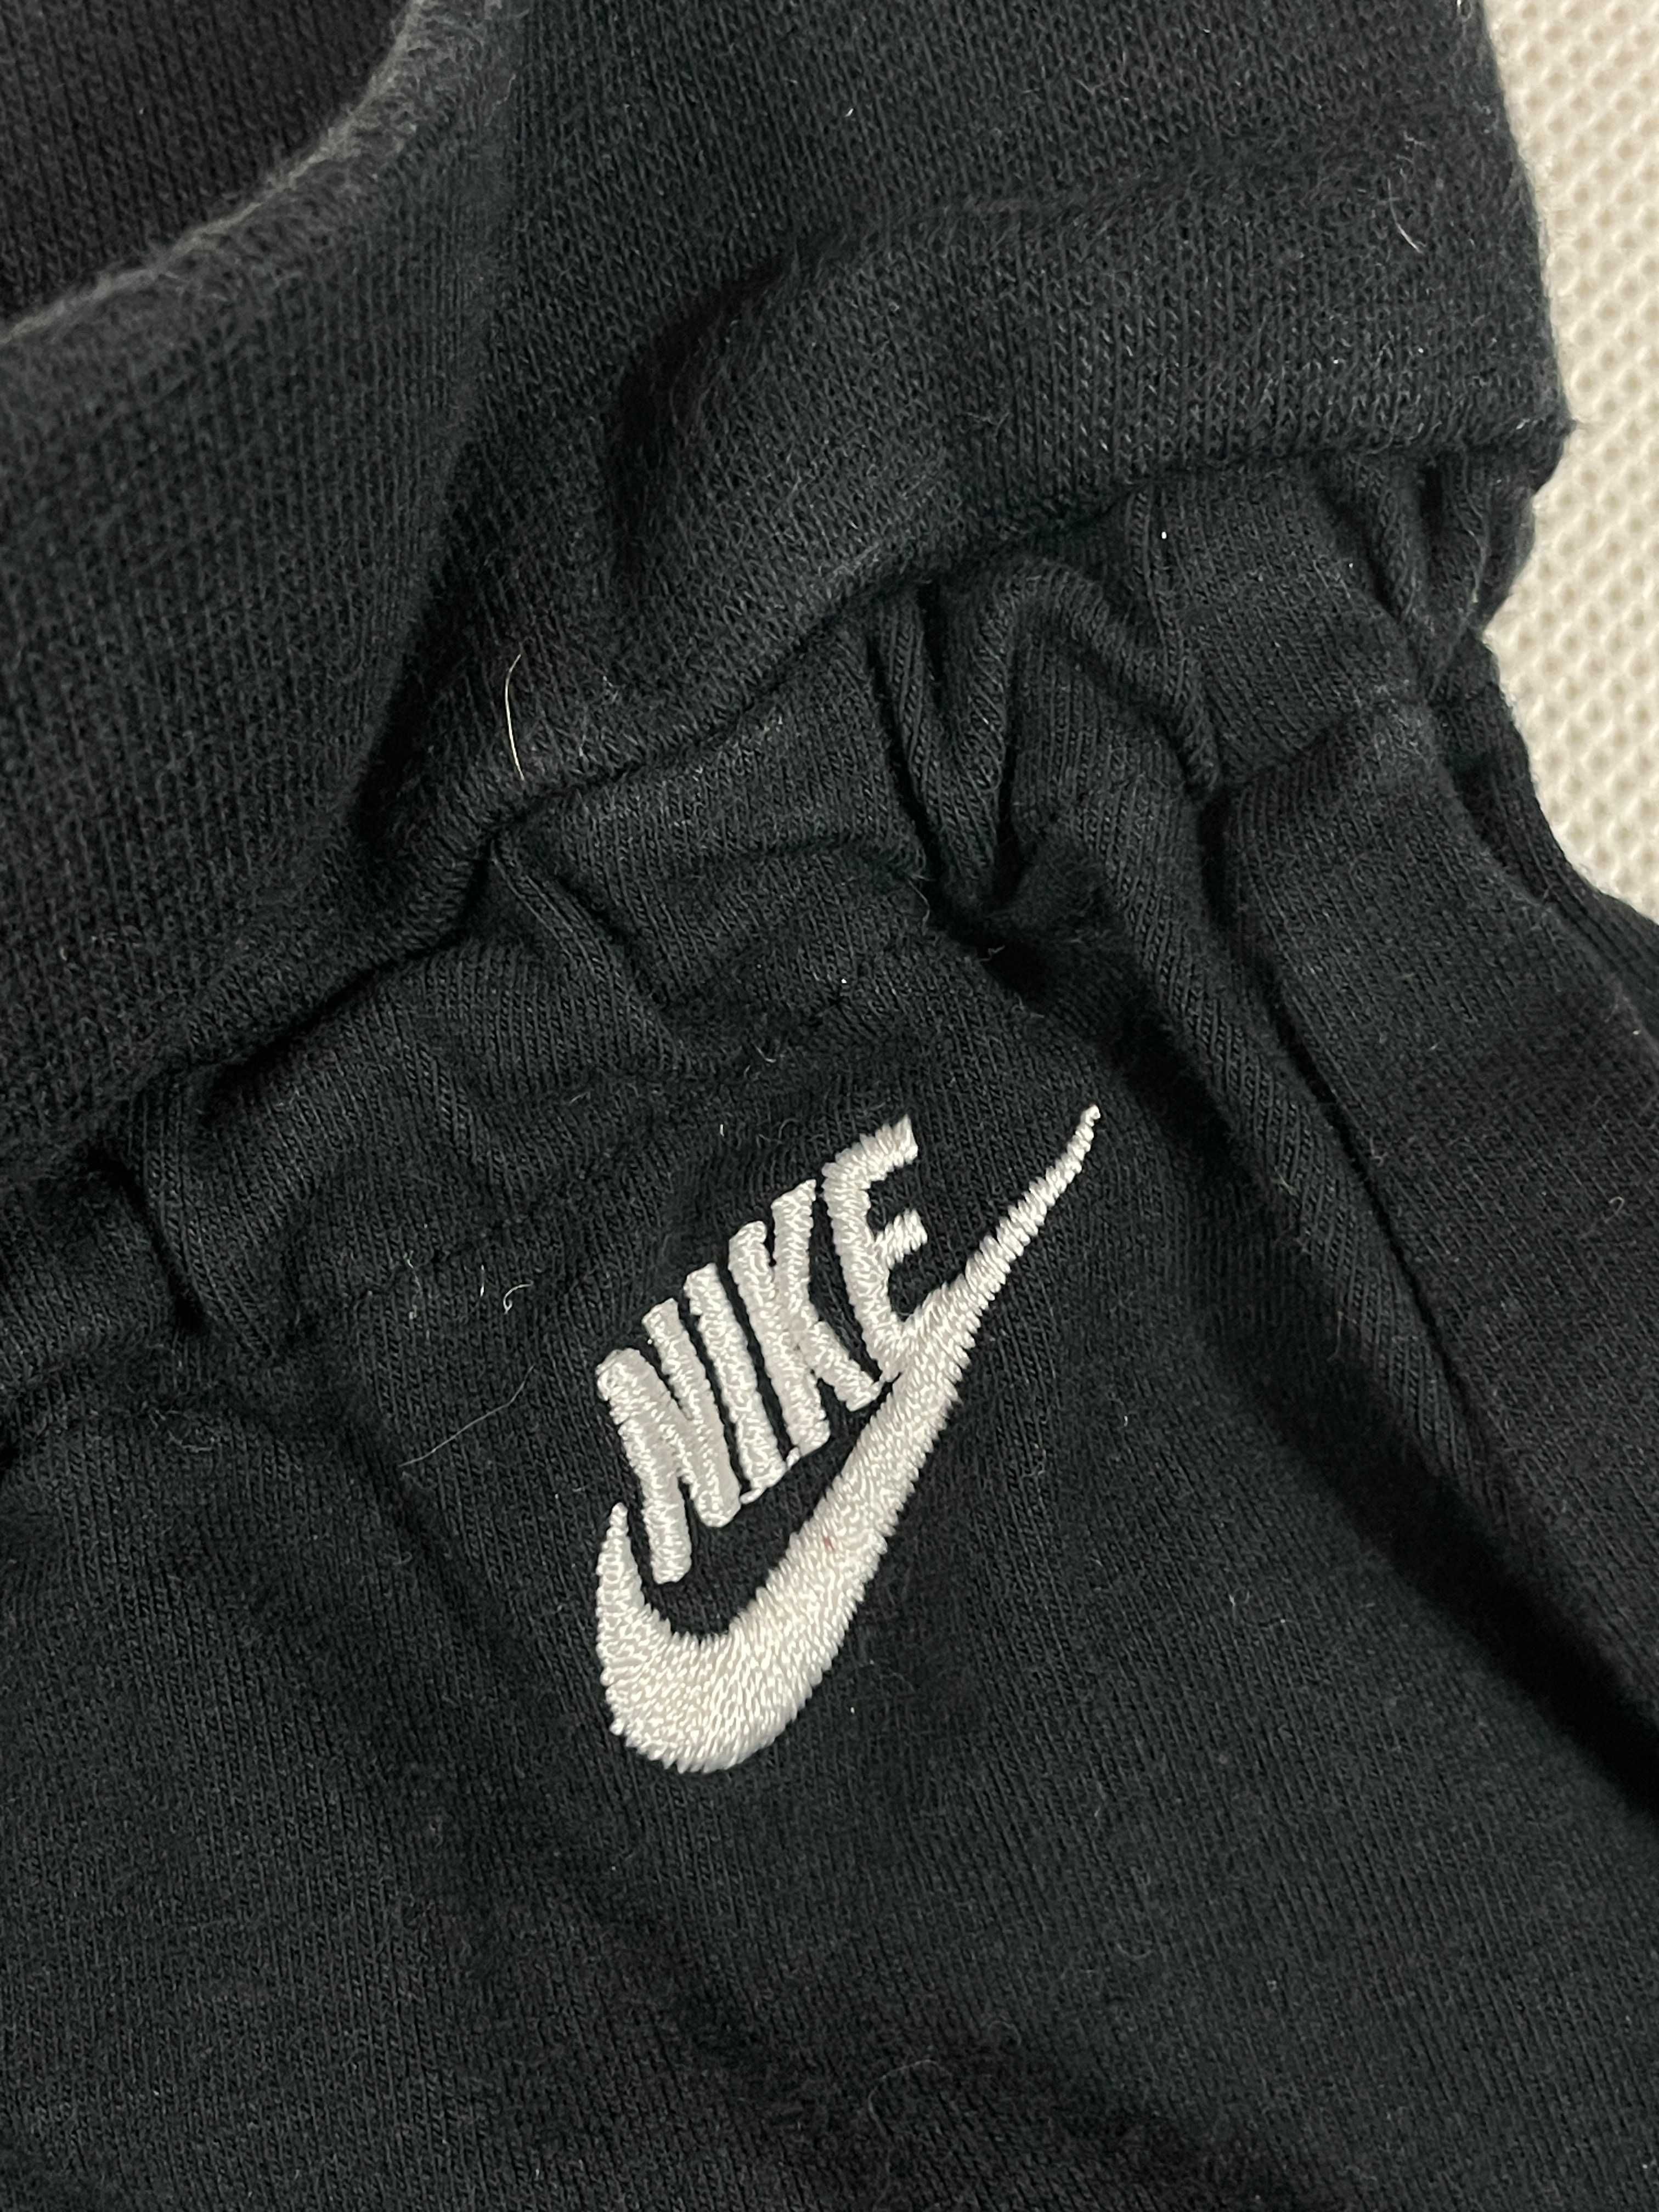 Nike Spodenki Damskie Czarne Krótkie Do Biegania Logo Klasyk Unikat M